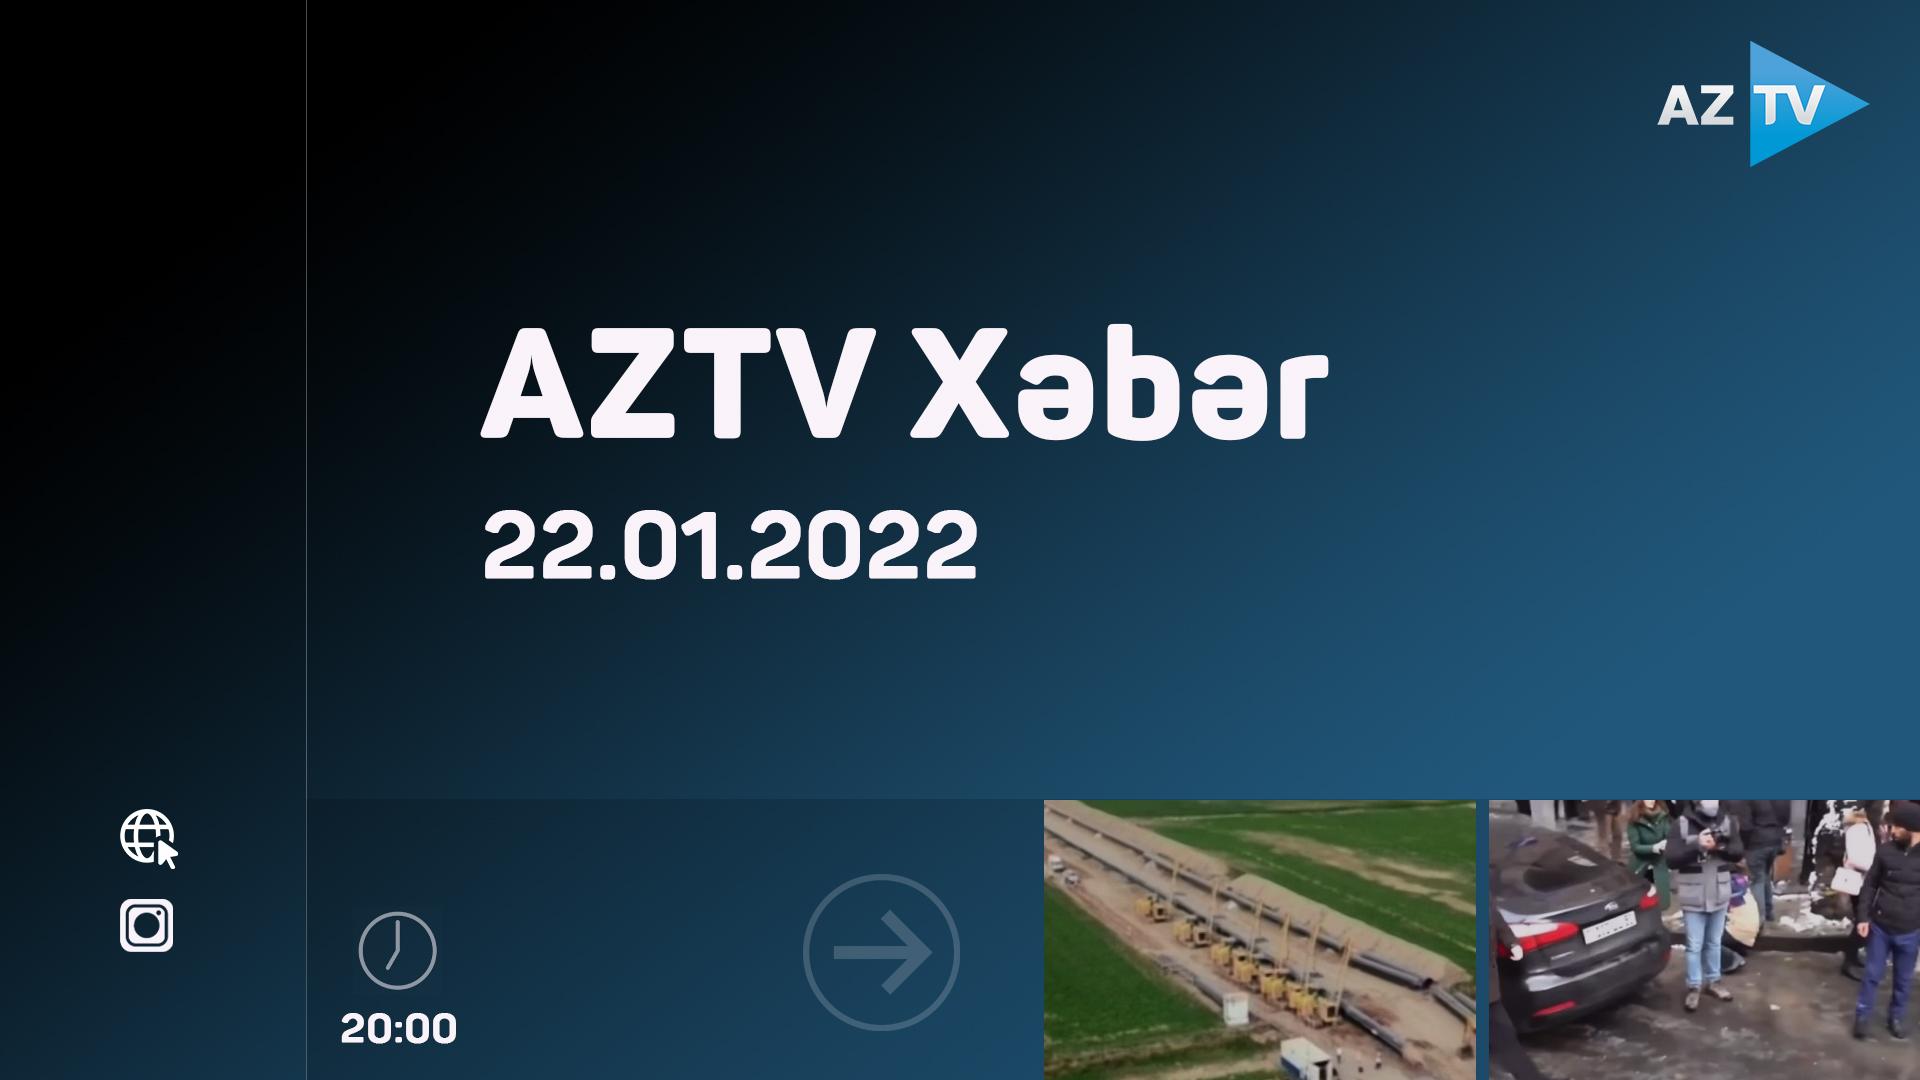 AZTV Xəbər 20:00 - 22.01.2022